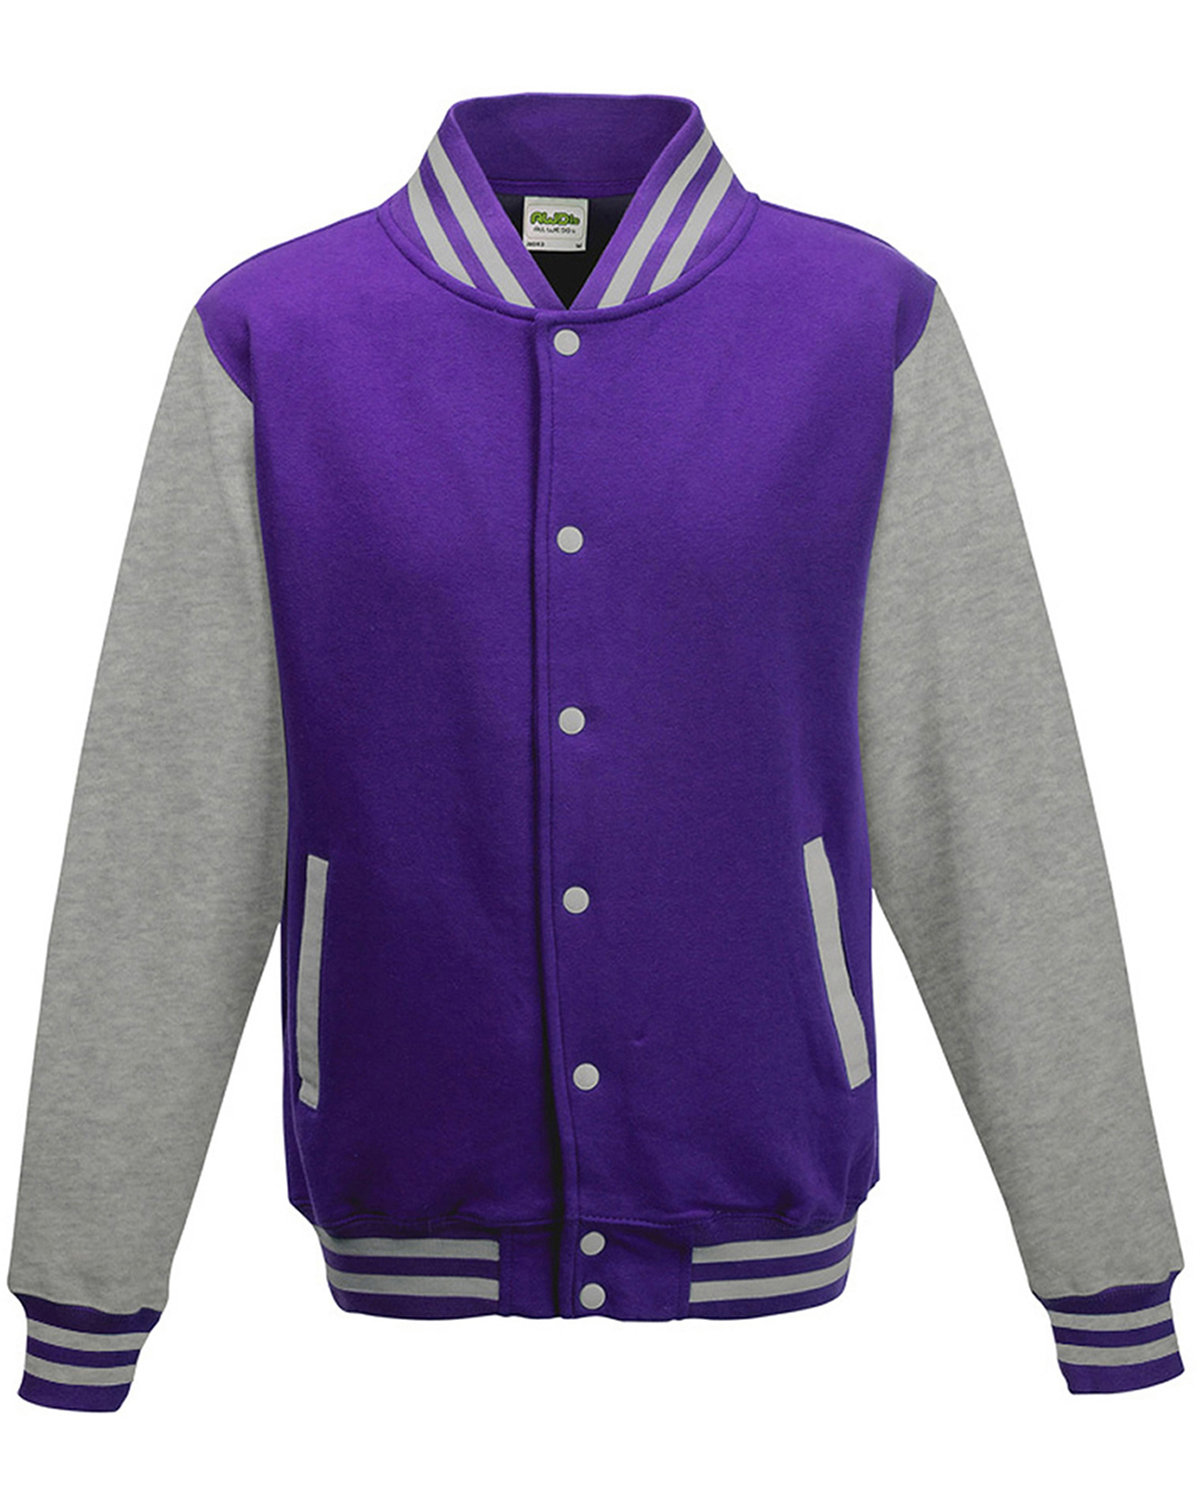 Jacket Makers Varsity Black and Purple Jacket